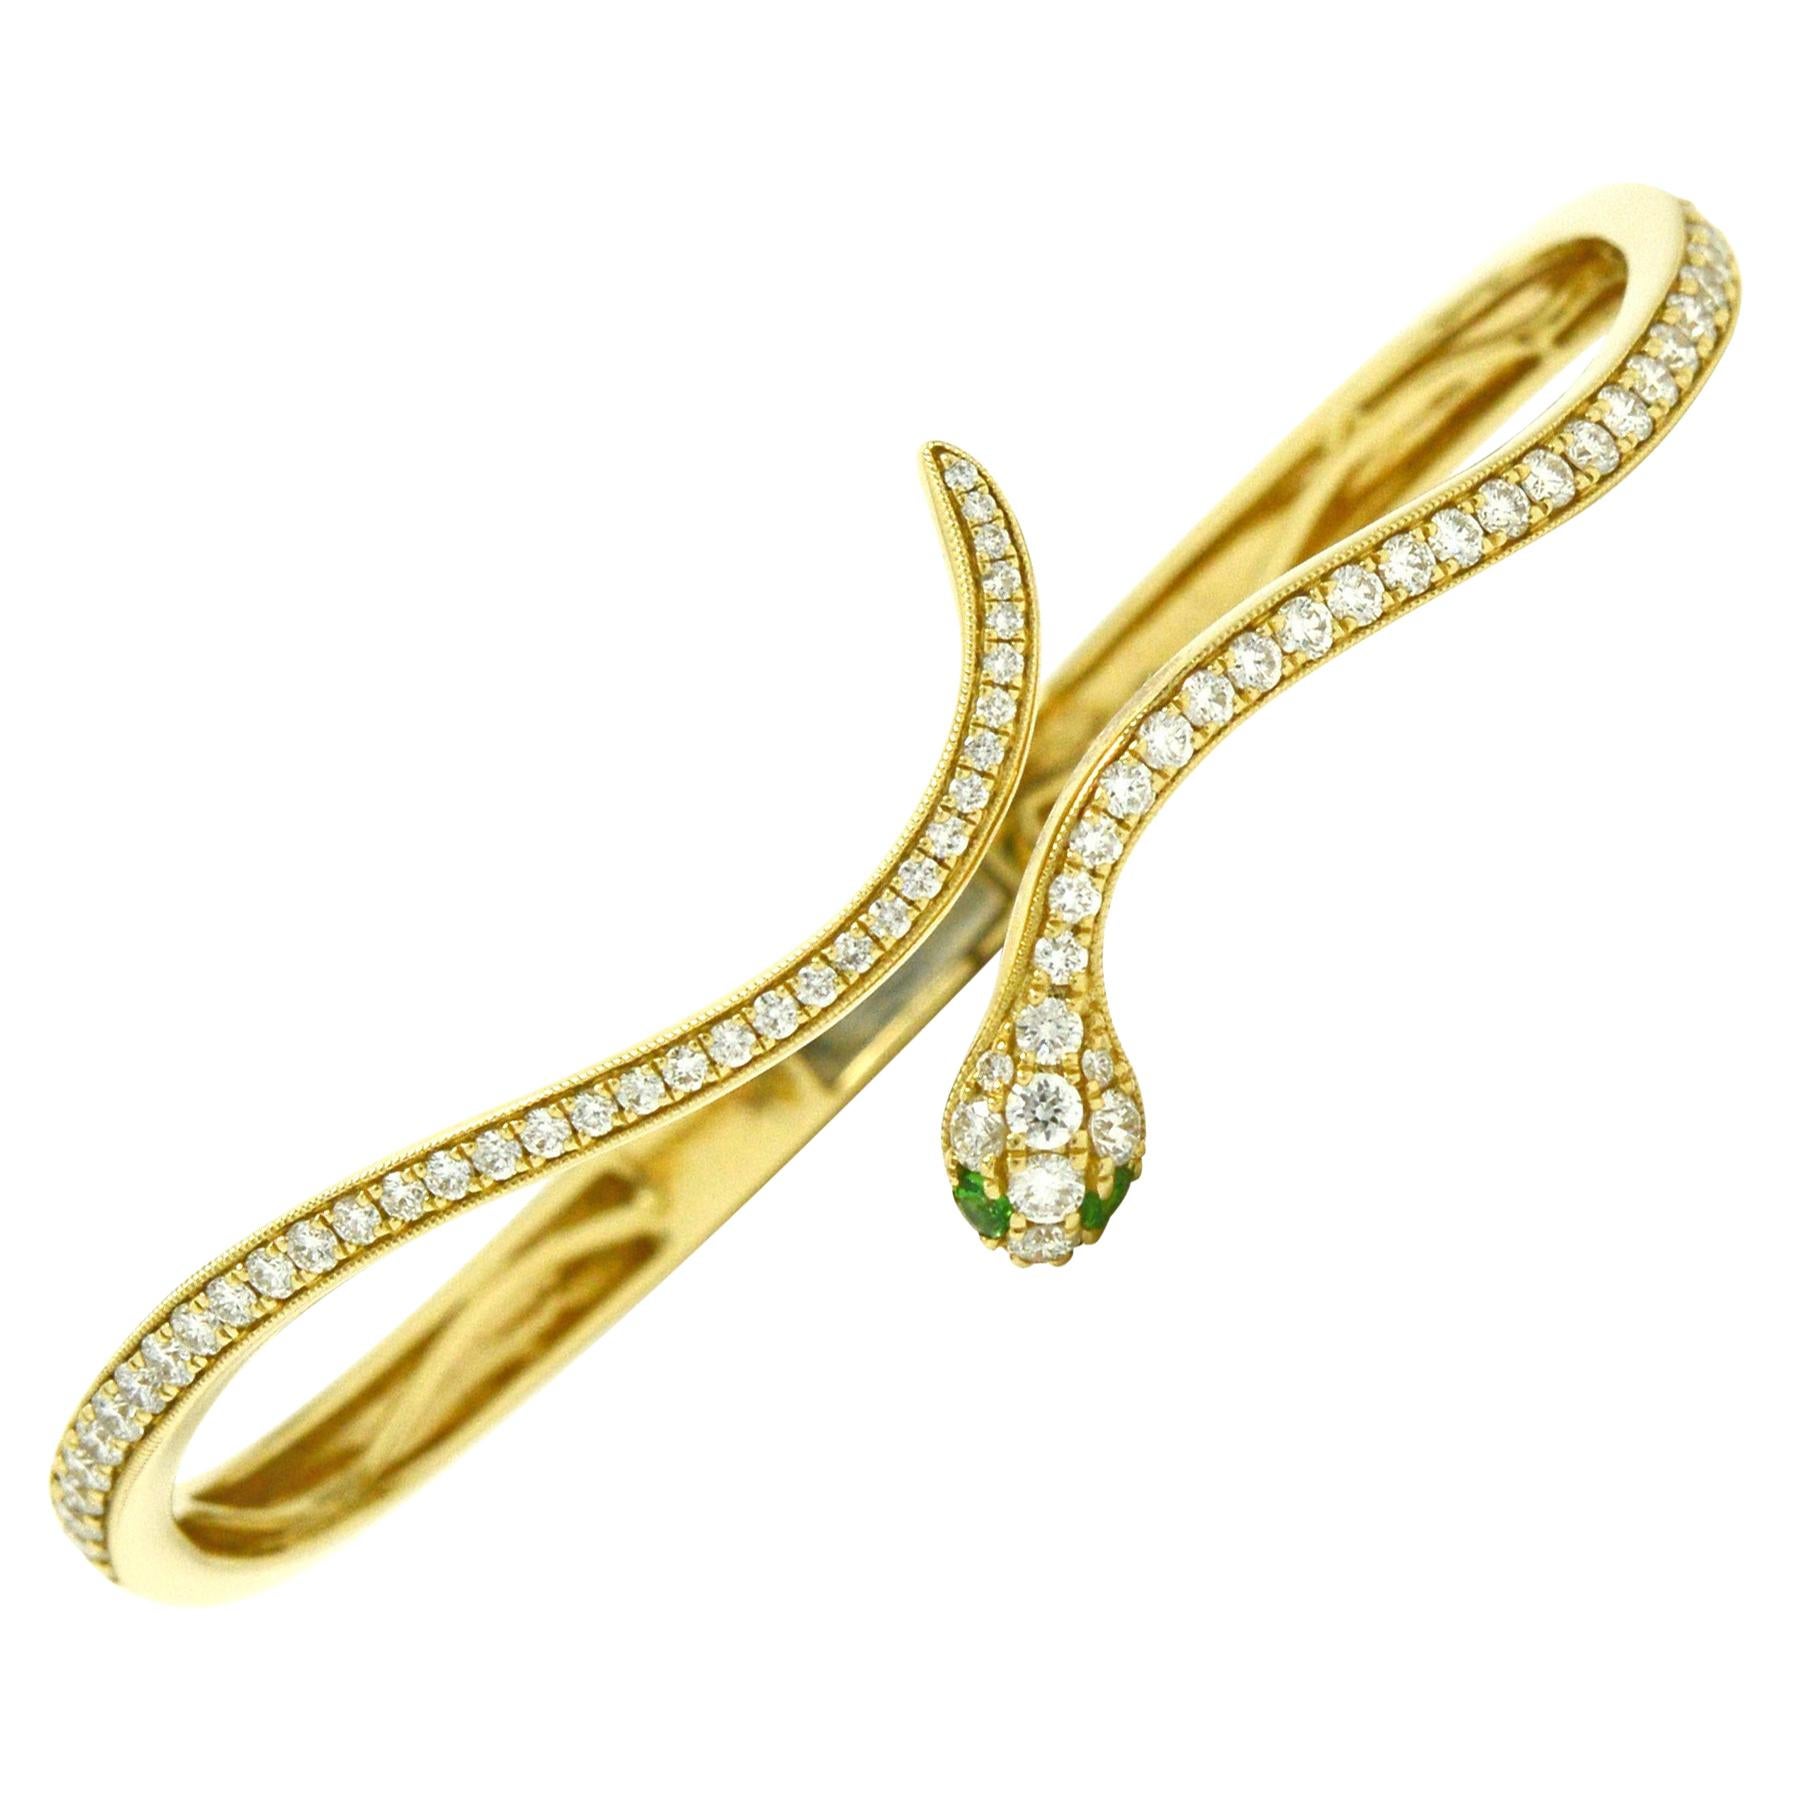 Gold Snake Bangle Bracelet Diamond Pave' 1.50 Carats Green Eyes Liz Taylor